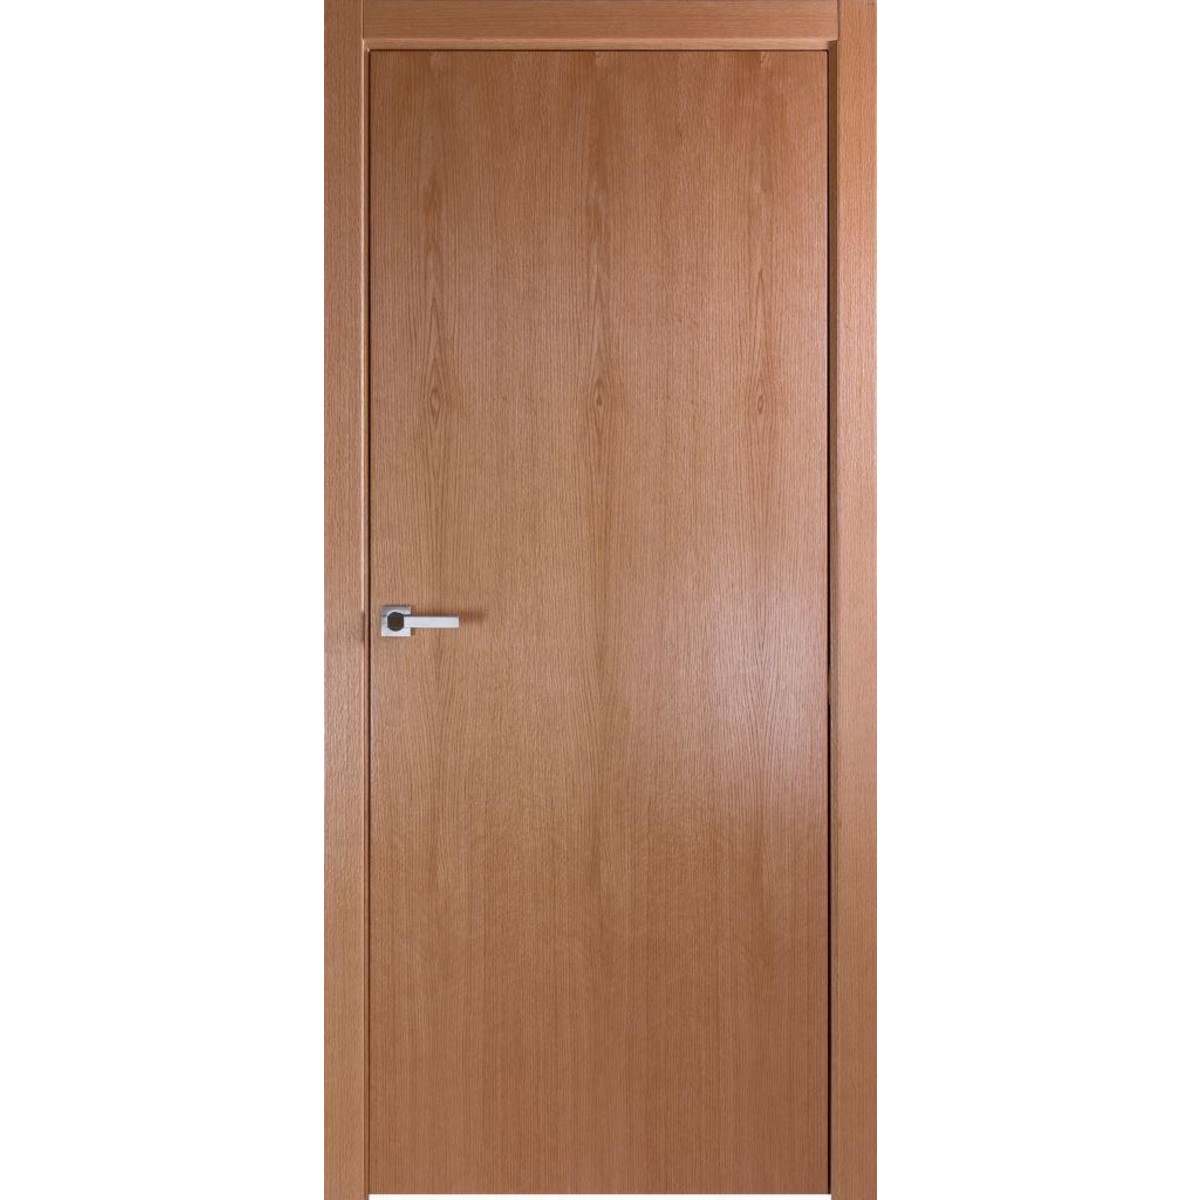 Дверь межкомнатная глухая без замка и петель в комплекте Лофтвуд 1 70x200 см шпон цвет дуб американский